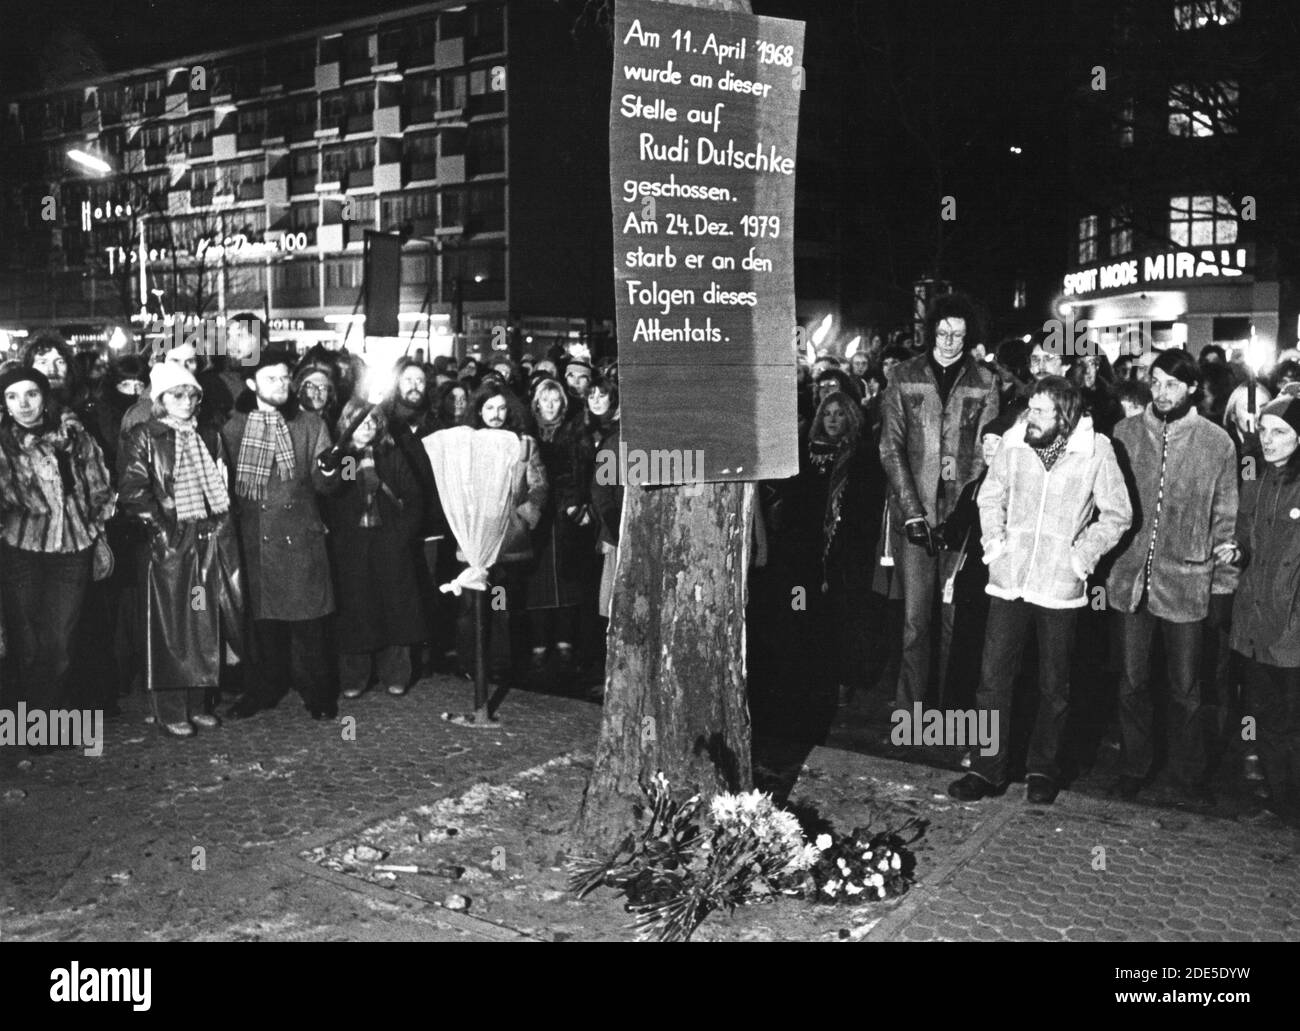 Berlin, 03.01.1980 - Trauernde gedenken am Abend der Beerdigung des verstorbenen RUDI DUTSCHKE (* 7. März 1940; † 24. Dezember 1979) an der Stelle auf dem Kurfürstendamm, an der er am 11.4.1968 angeschosen wurde. --- Berlino, Germania, 3 gennaio 1980 - in serata, i cordoglio commemorano i funerali DEL defunto RUDI DUTSCHKE (* 7 marzo 1940 - 24 dicembre 1979) al posto di Kurfürstendamm dove è stato ucciso il 11 aprile 1968. Foto Stock